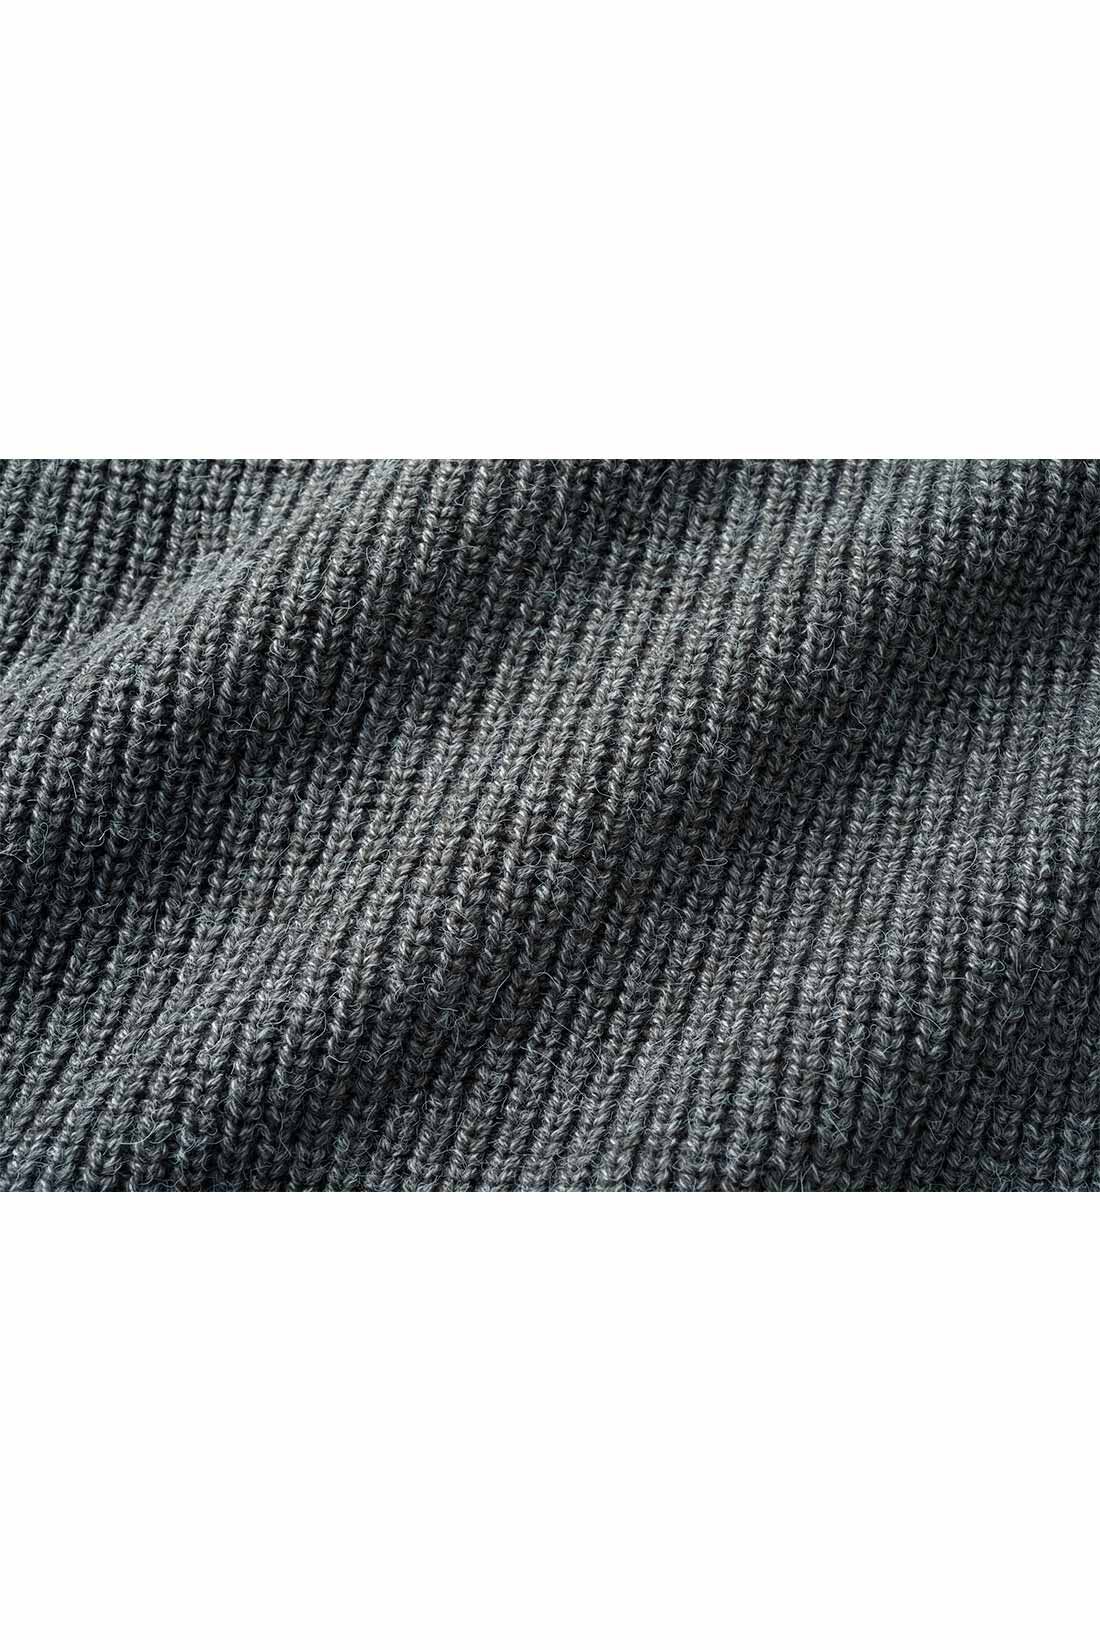 IEDIT[イディット]　すそクロスデザインが新鮮なニットトップス〈ダークグレー〉|ほどよく厚地で表面感のある片あぜ編みがリッチな表情。 ※お届けするカラーとは異なります。